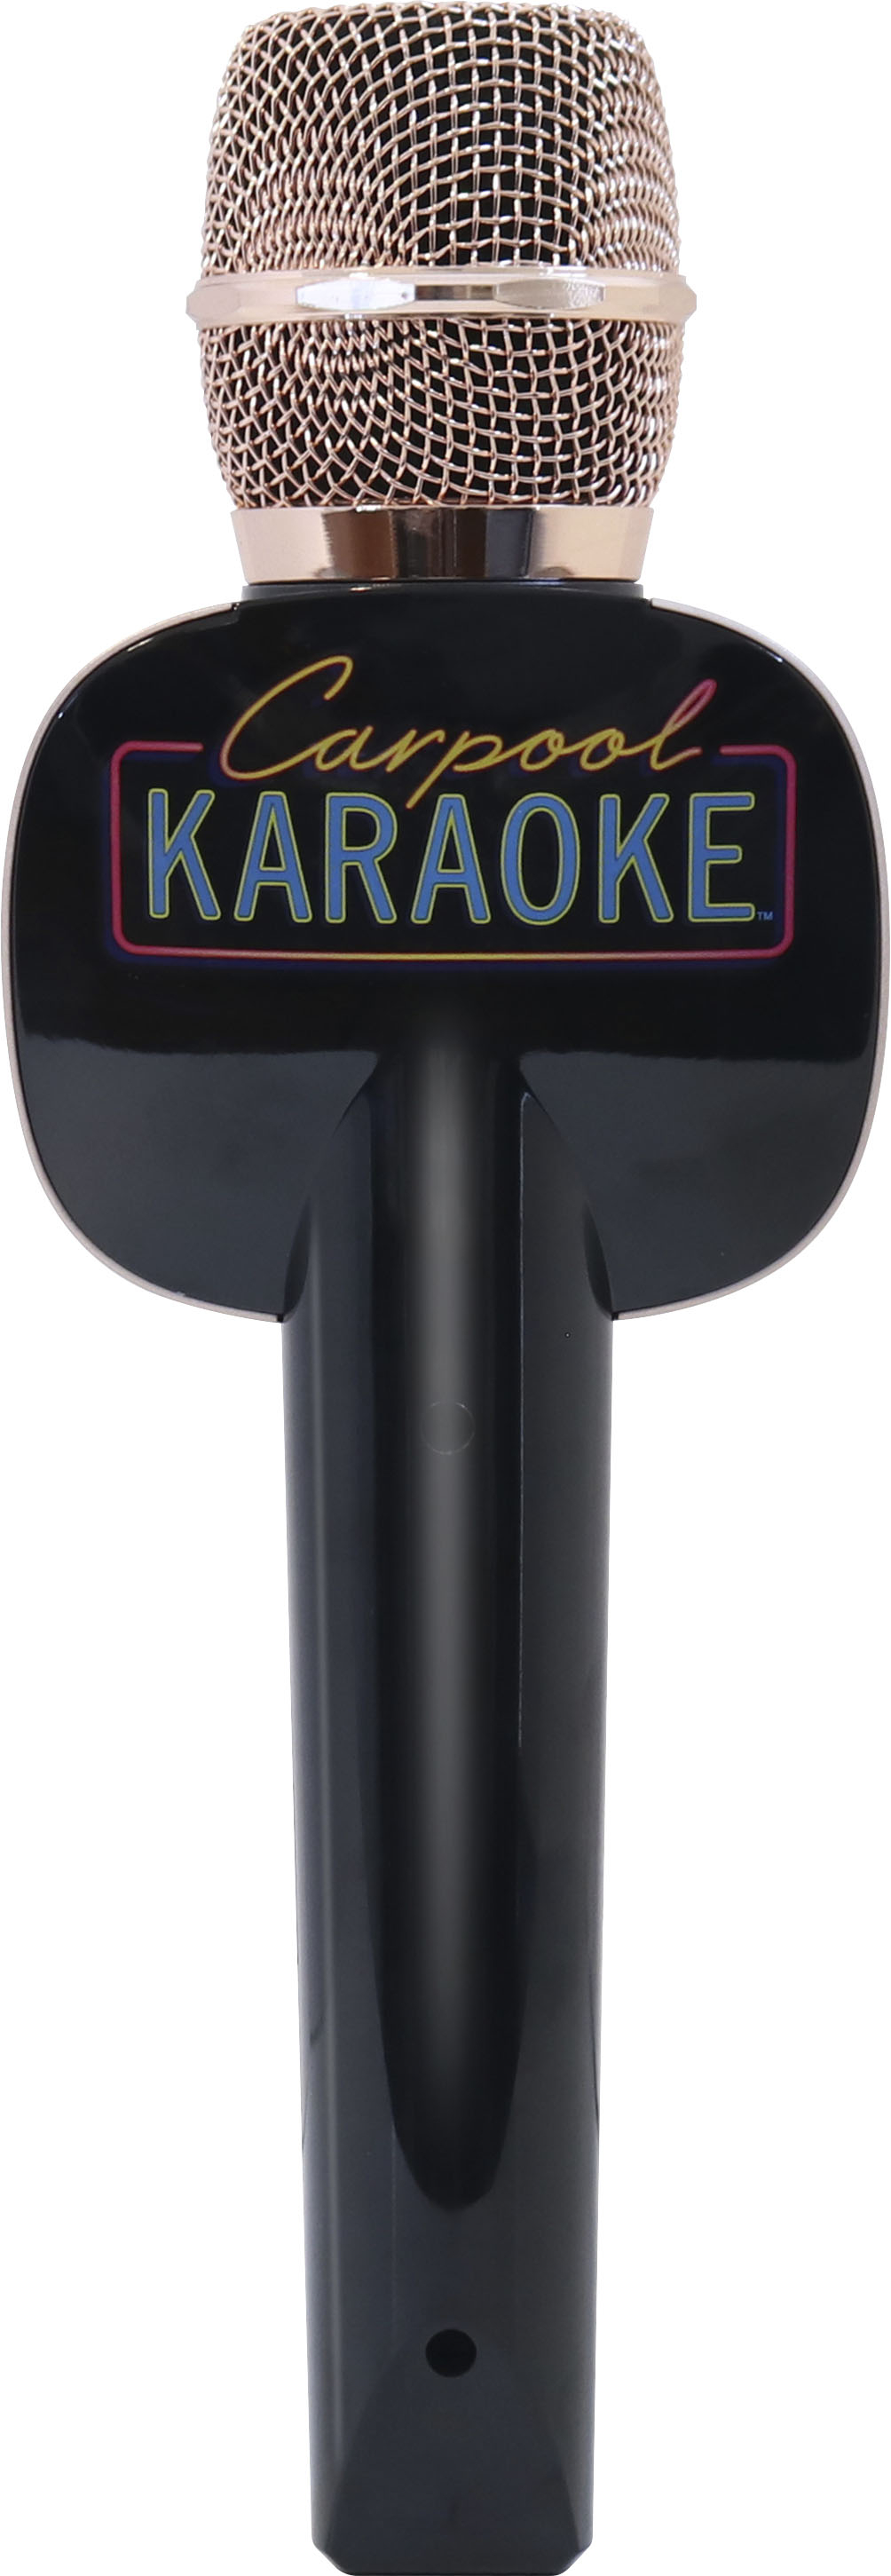 Back View: Singing Machine - Carpool Karaoke Mic 2.0 - Rose Gold